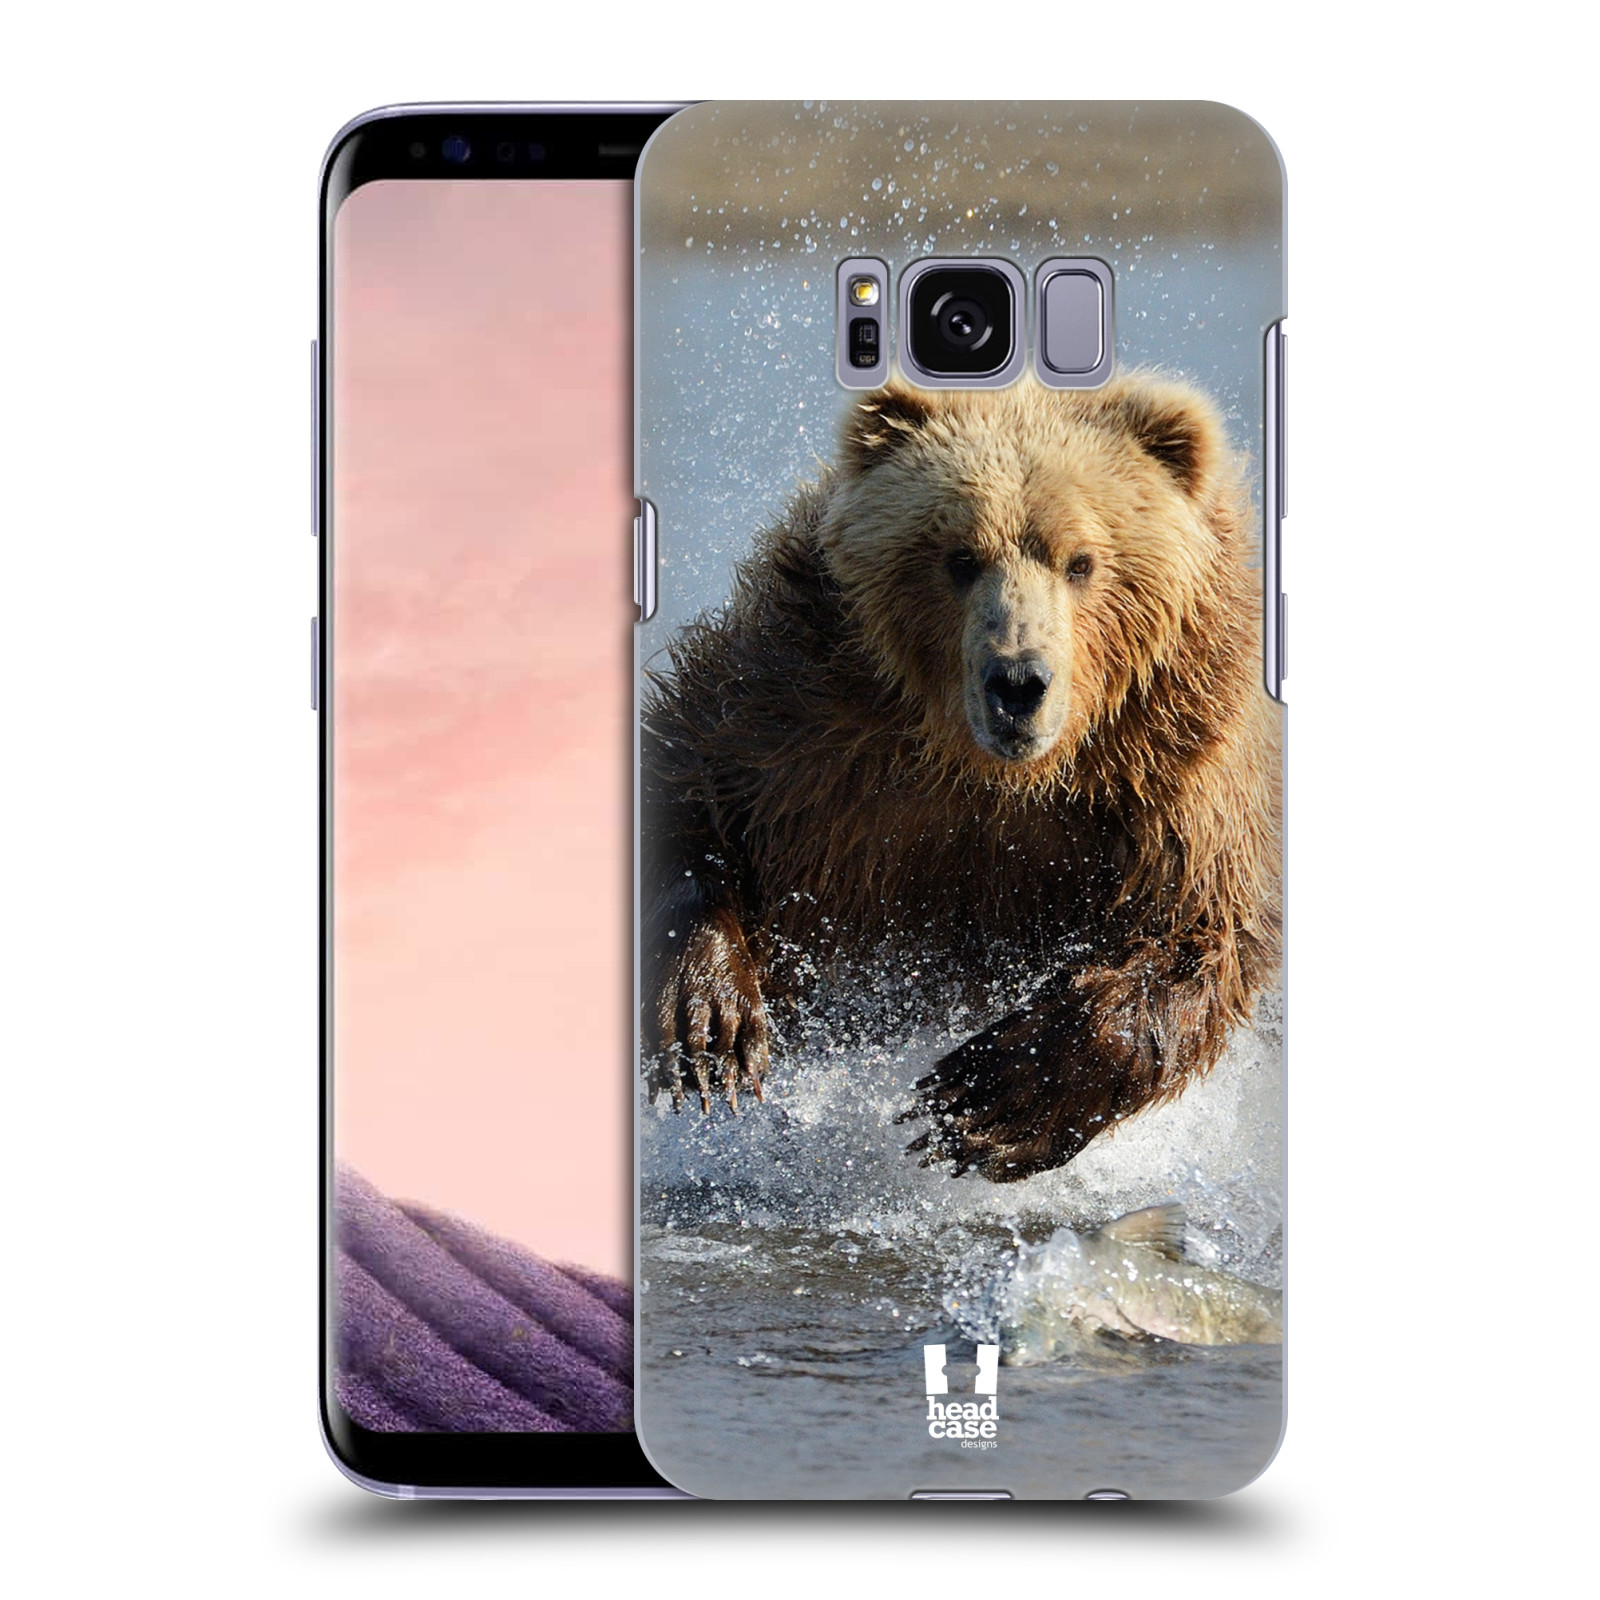 HEAD CASE plastový obal na mobil Samsung Galaxy S8 vzor Divočina, Divoký život a zvířata foto MEDVĚD GRIZZLY HŇEDÁ